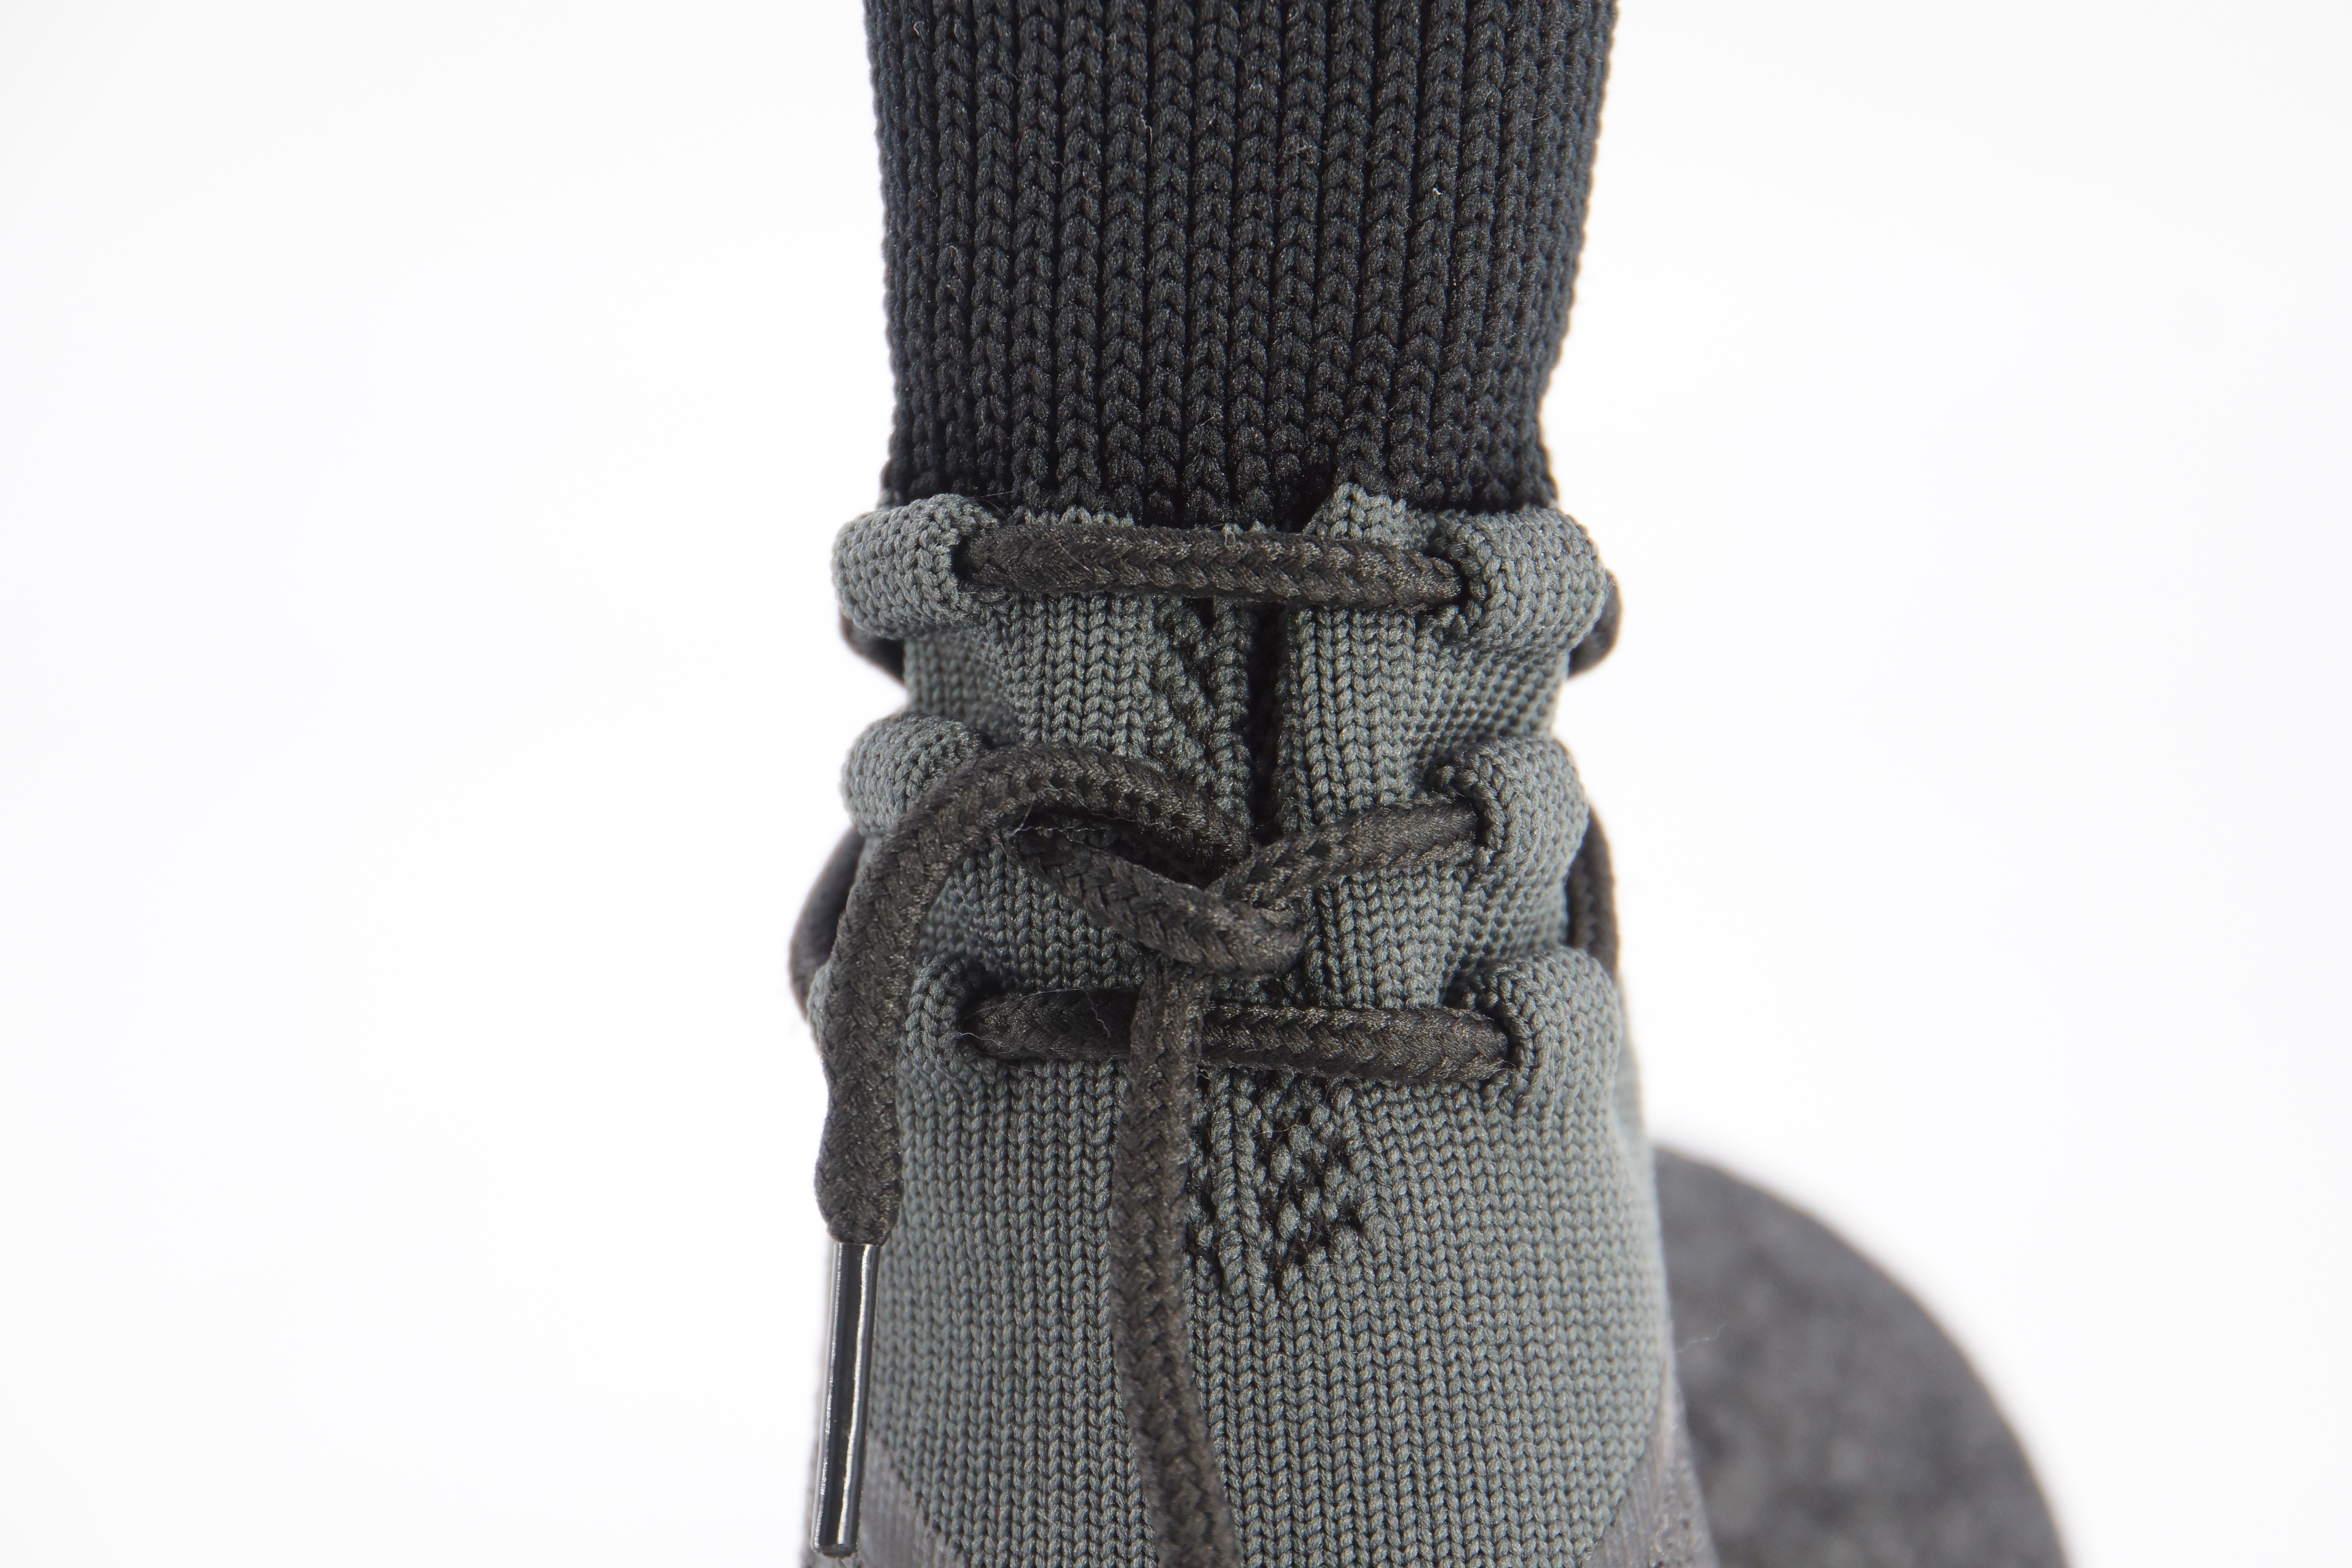 Lanboer Pet Dog Anti-slip Waterproof Socks Sport Pet Boots